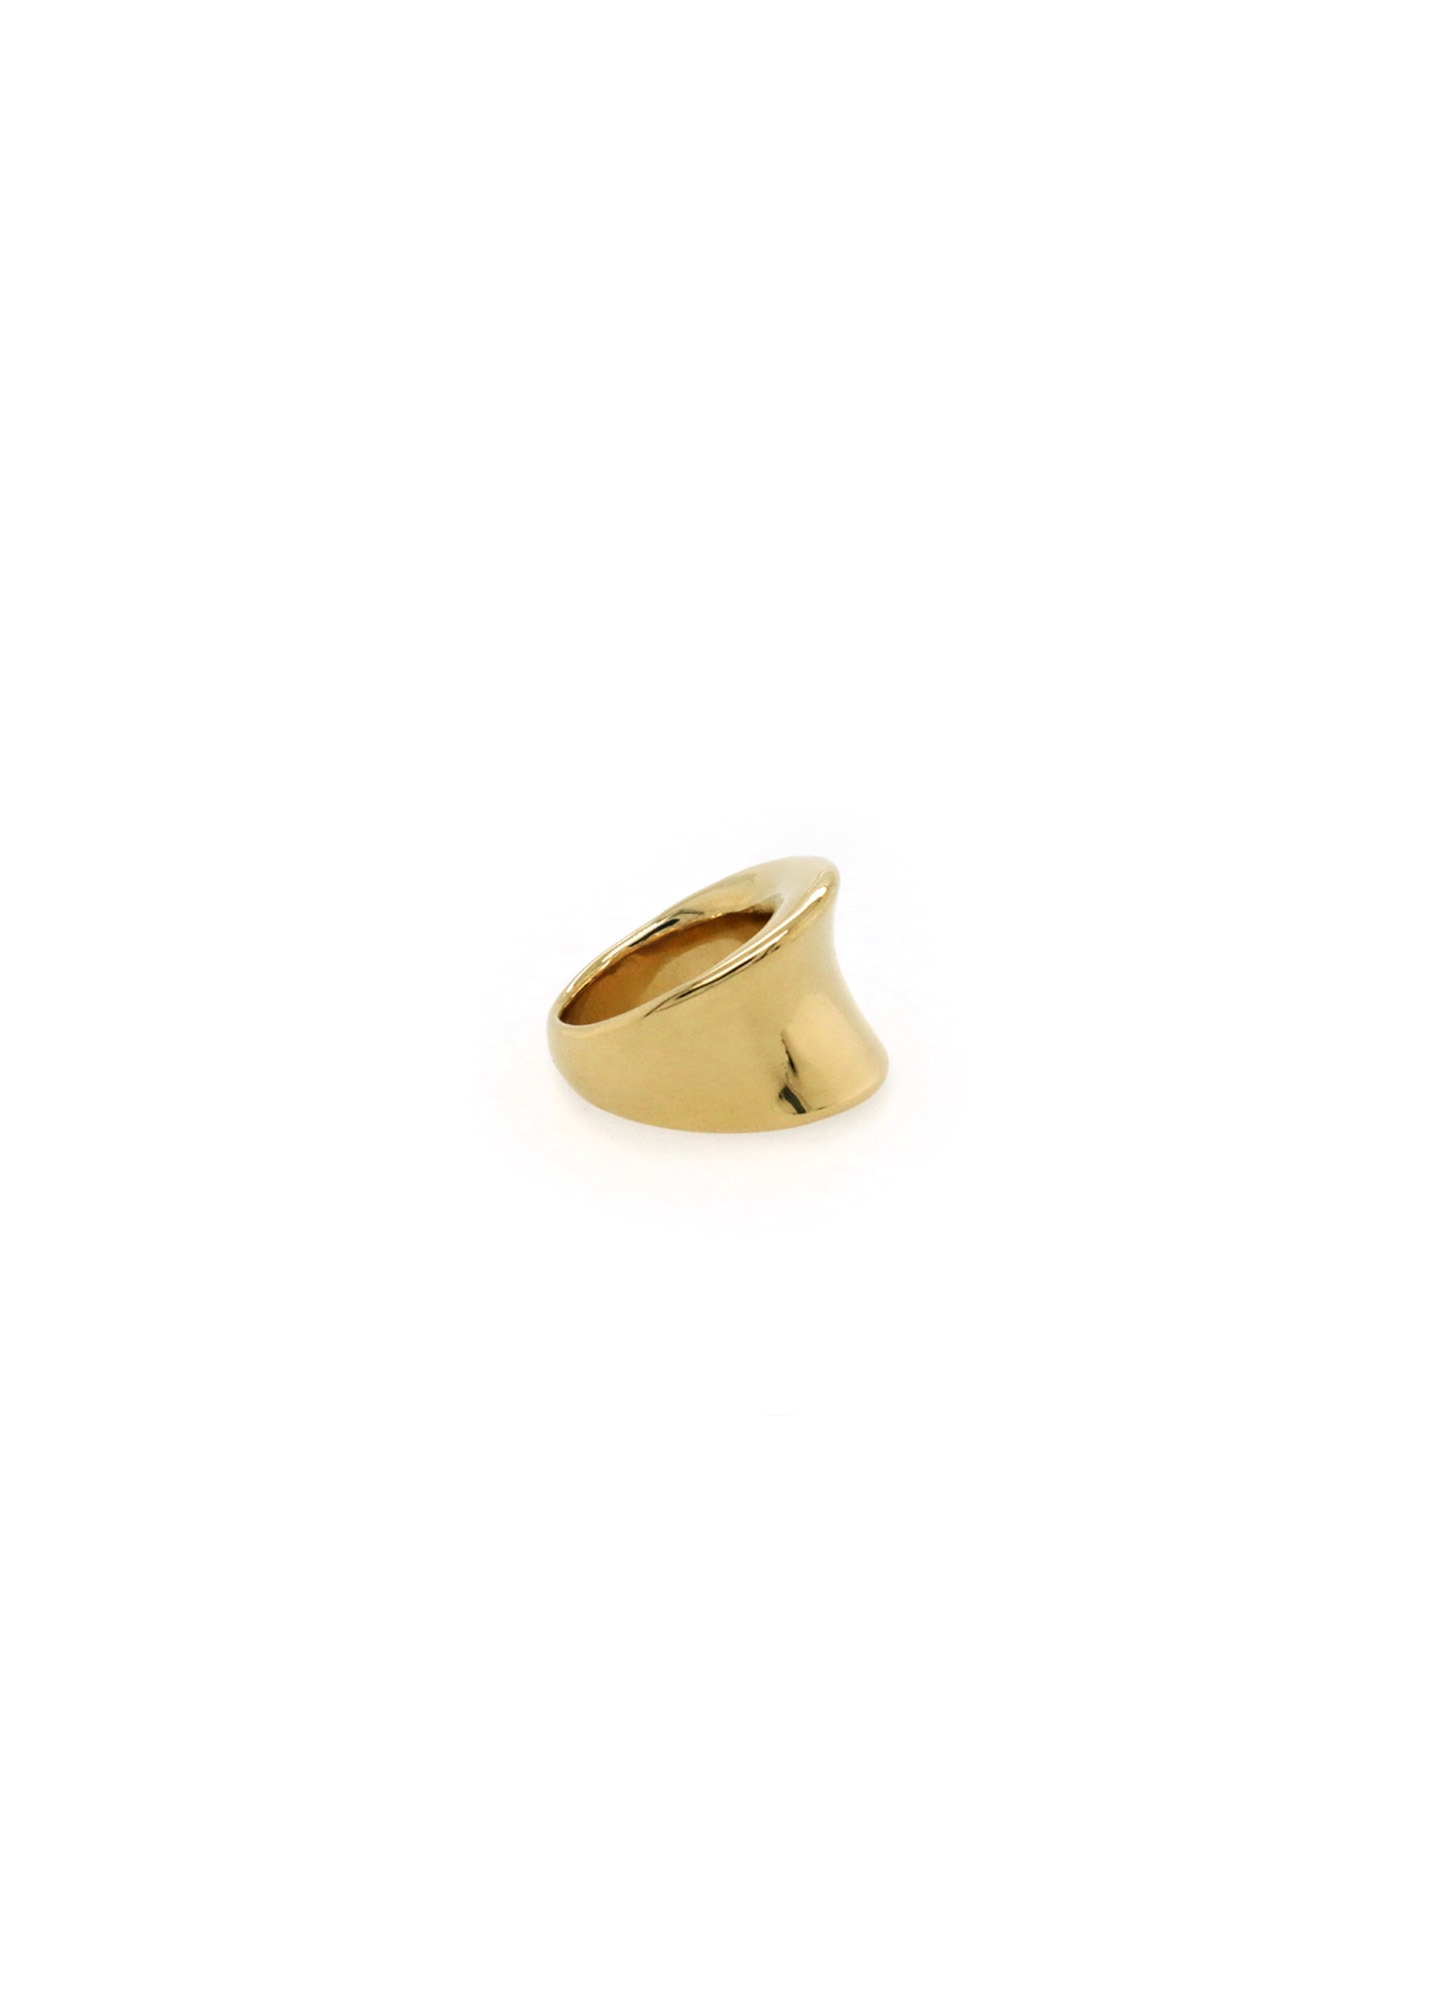 Gold U shape ring 